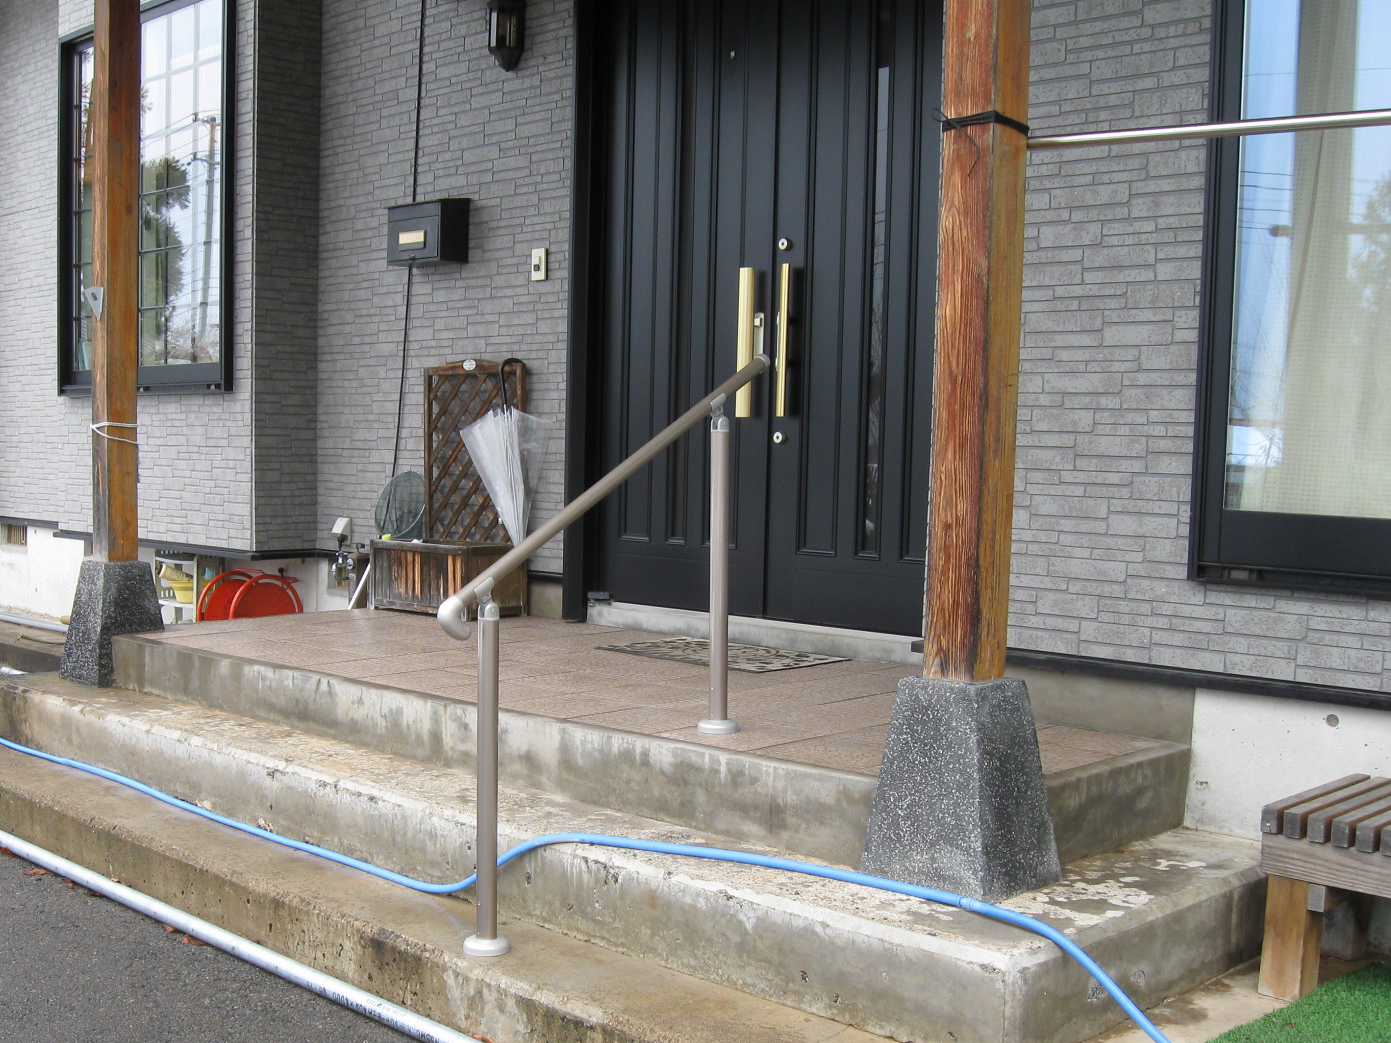 福島県耶麻郡猪苗代町の住宅で、手摺を設置したリフォーム事例